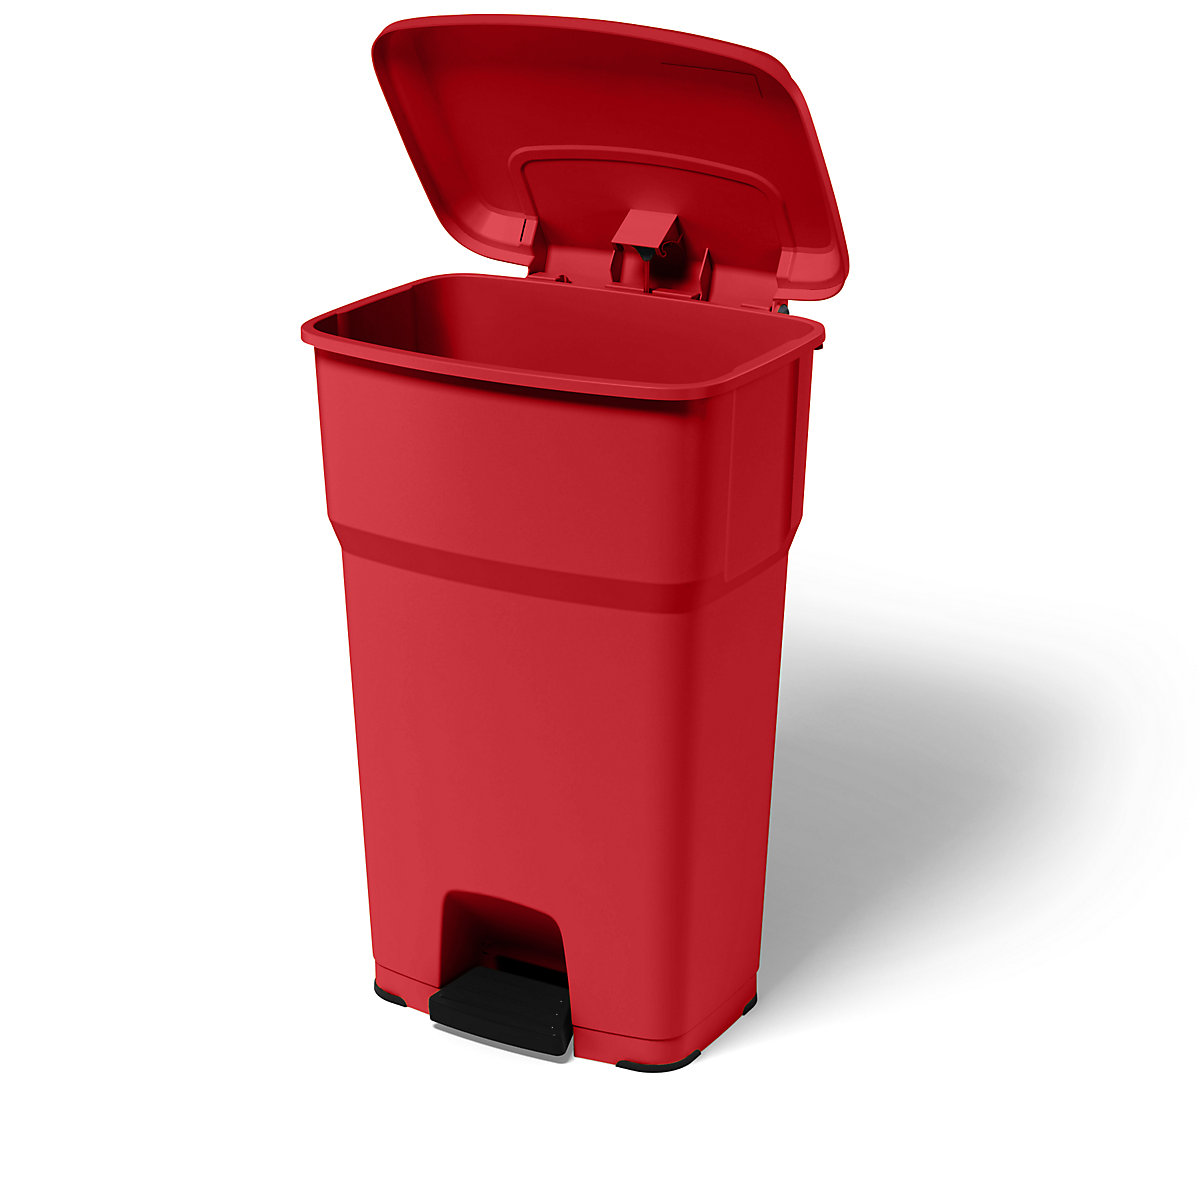 Spremnik za otpad s papučicom HERA – rothopro, volumen 85 l, ŠxVxD 490 x 790 x 390 mm, u crvenoj boji-7